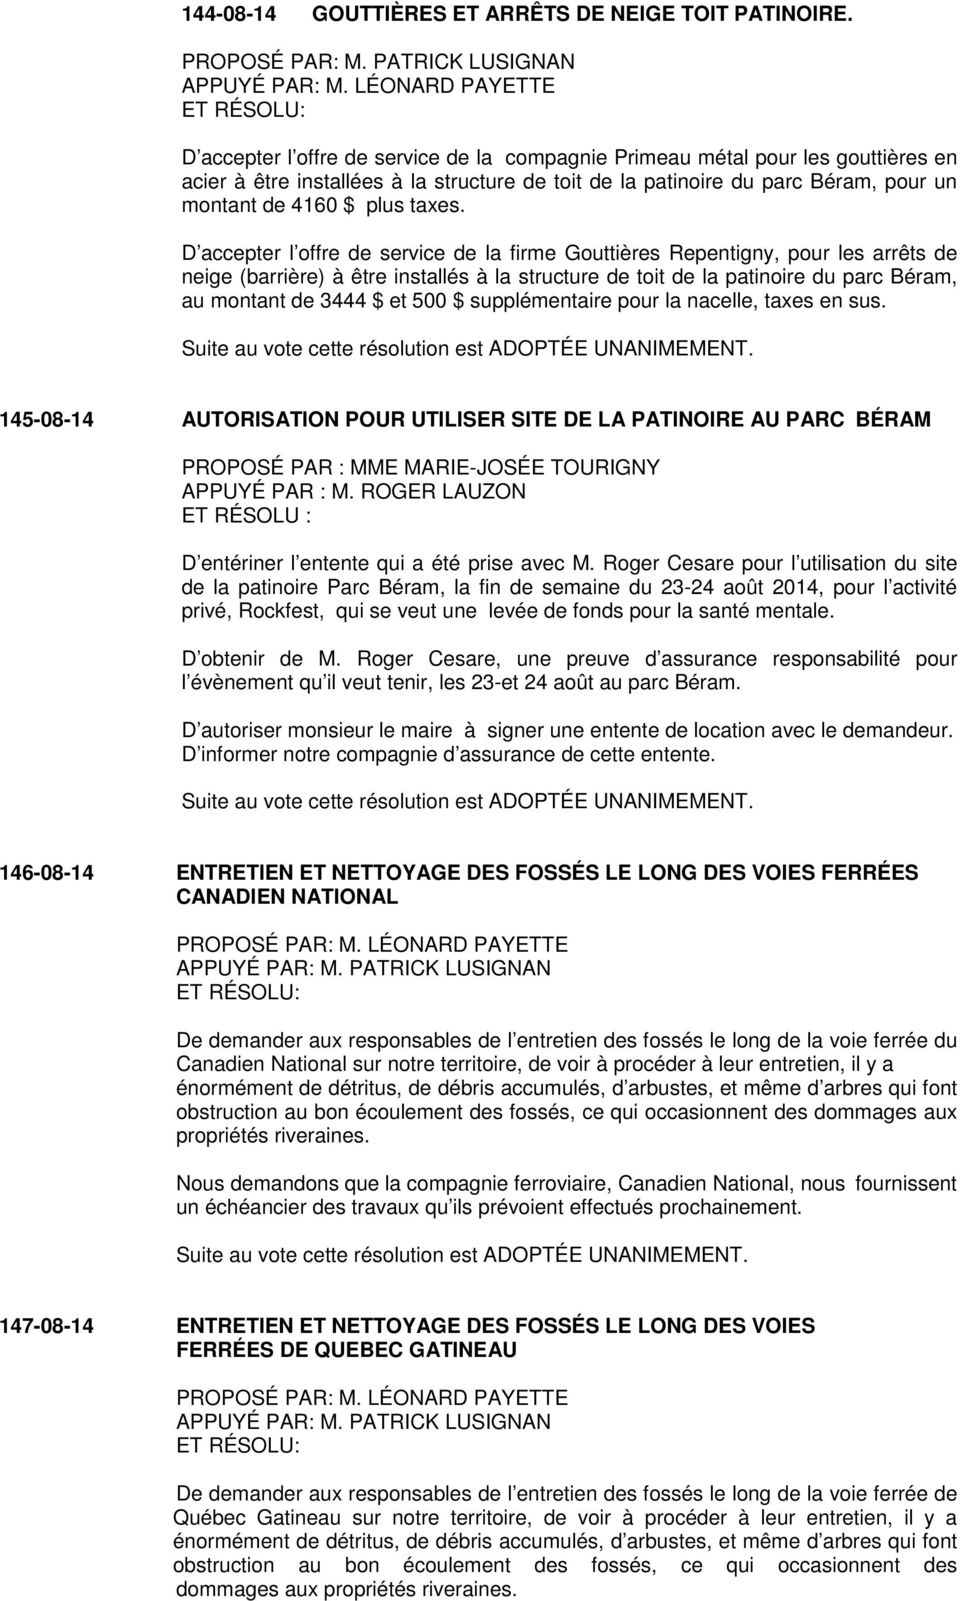 D accepter l offre de service de la firme Gouttières Repentigny, pour les arrêts de neige (barrière) à être installés à la structure de toit de la patinoire du parc Béram, au montant de 3444 $ et 500